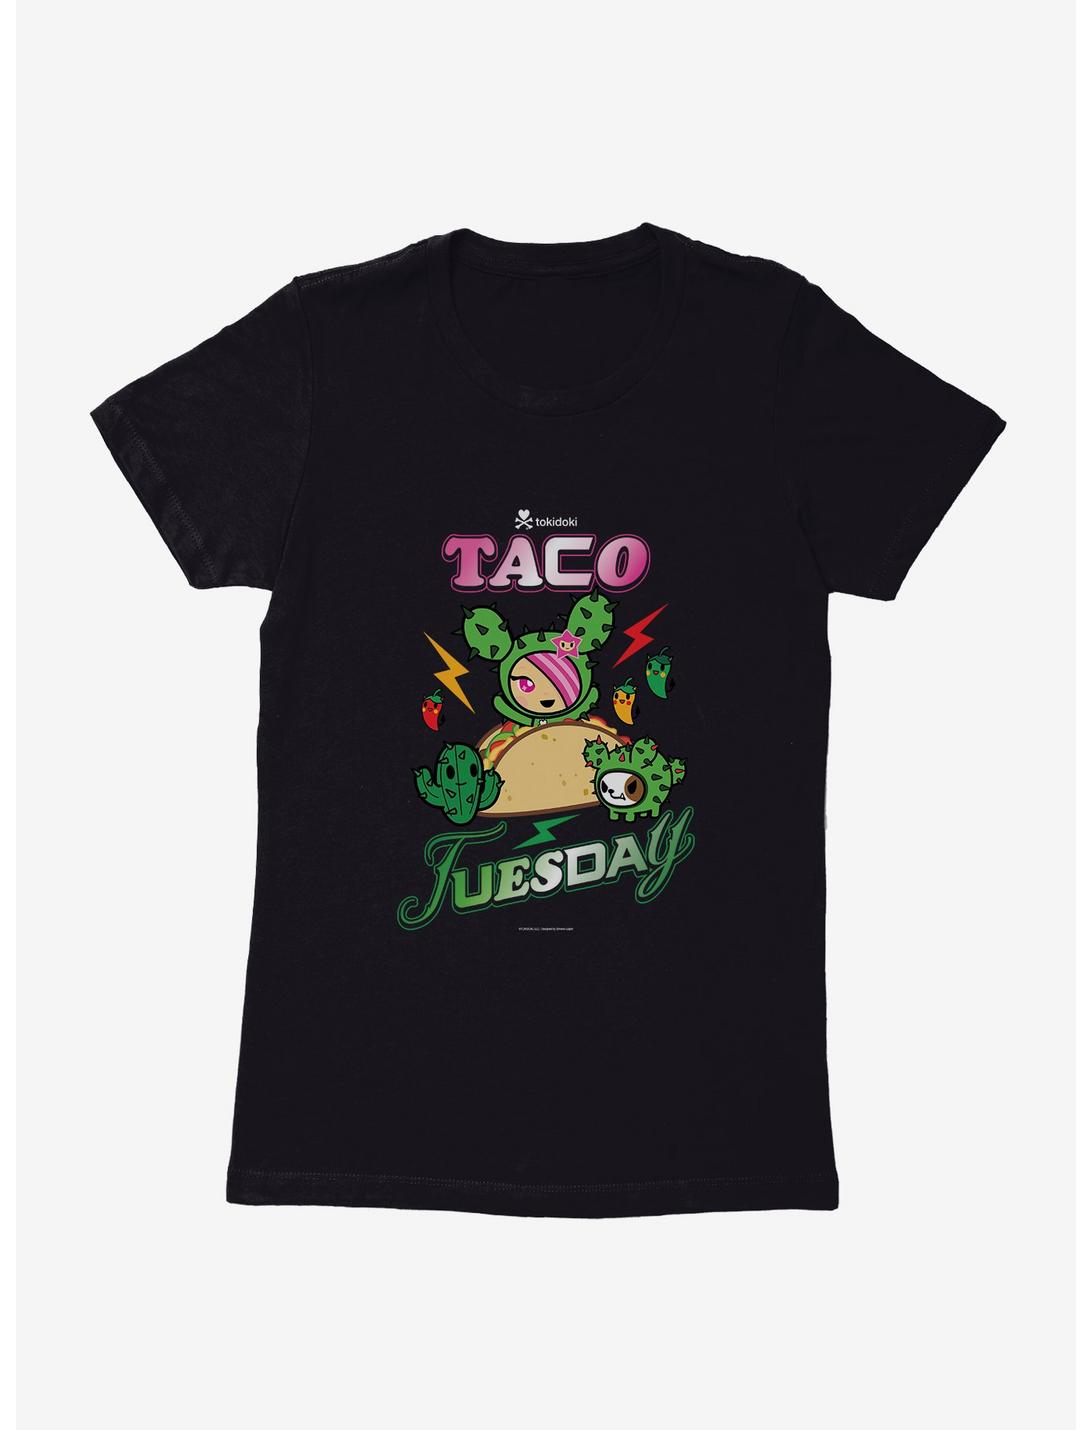 Tokidoki Taco Tuesday Womens T-Shirt, , hi-res